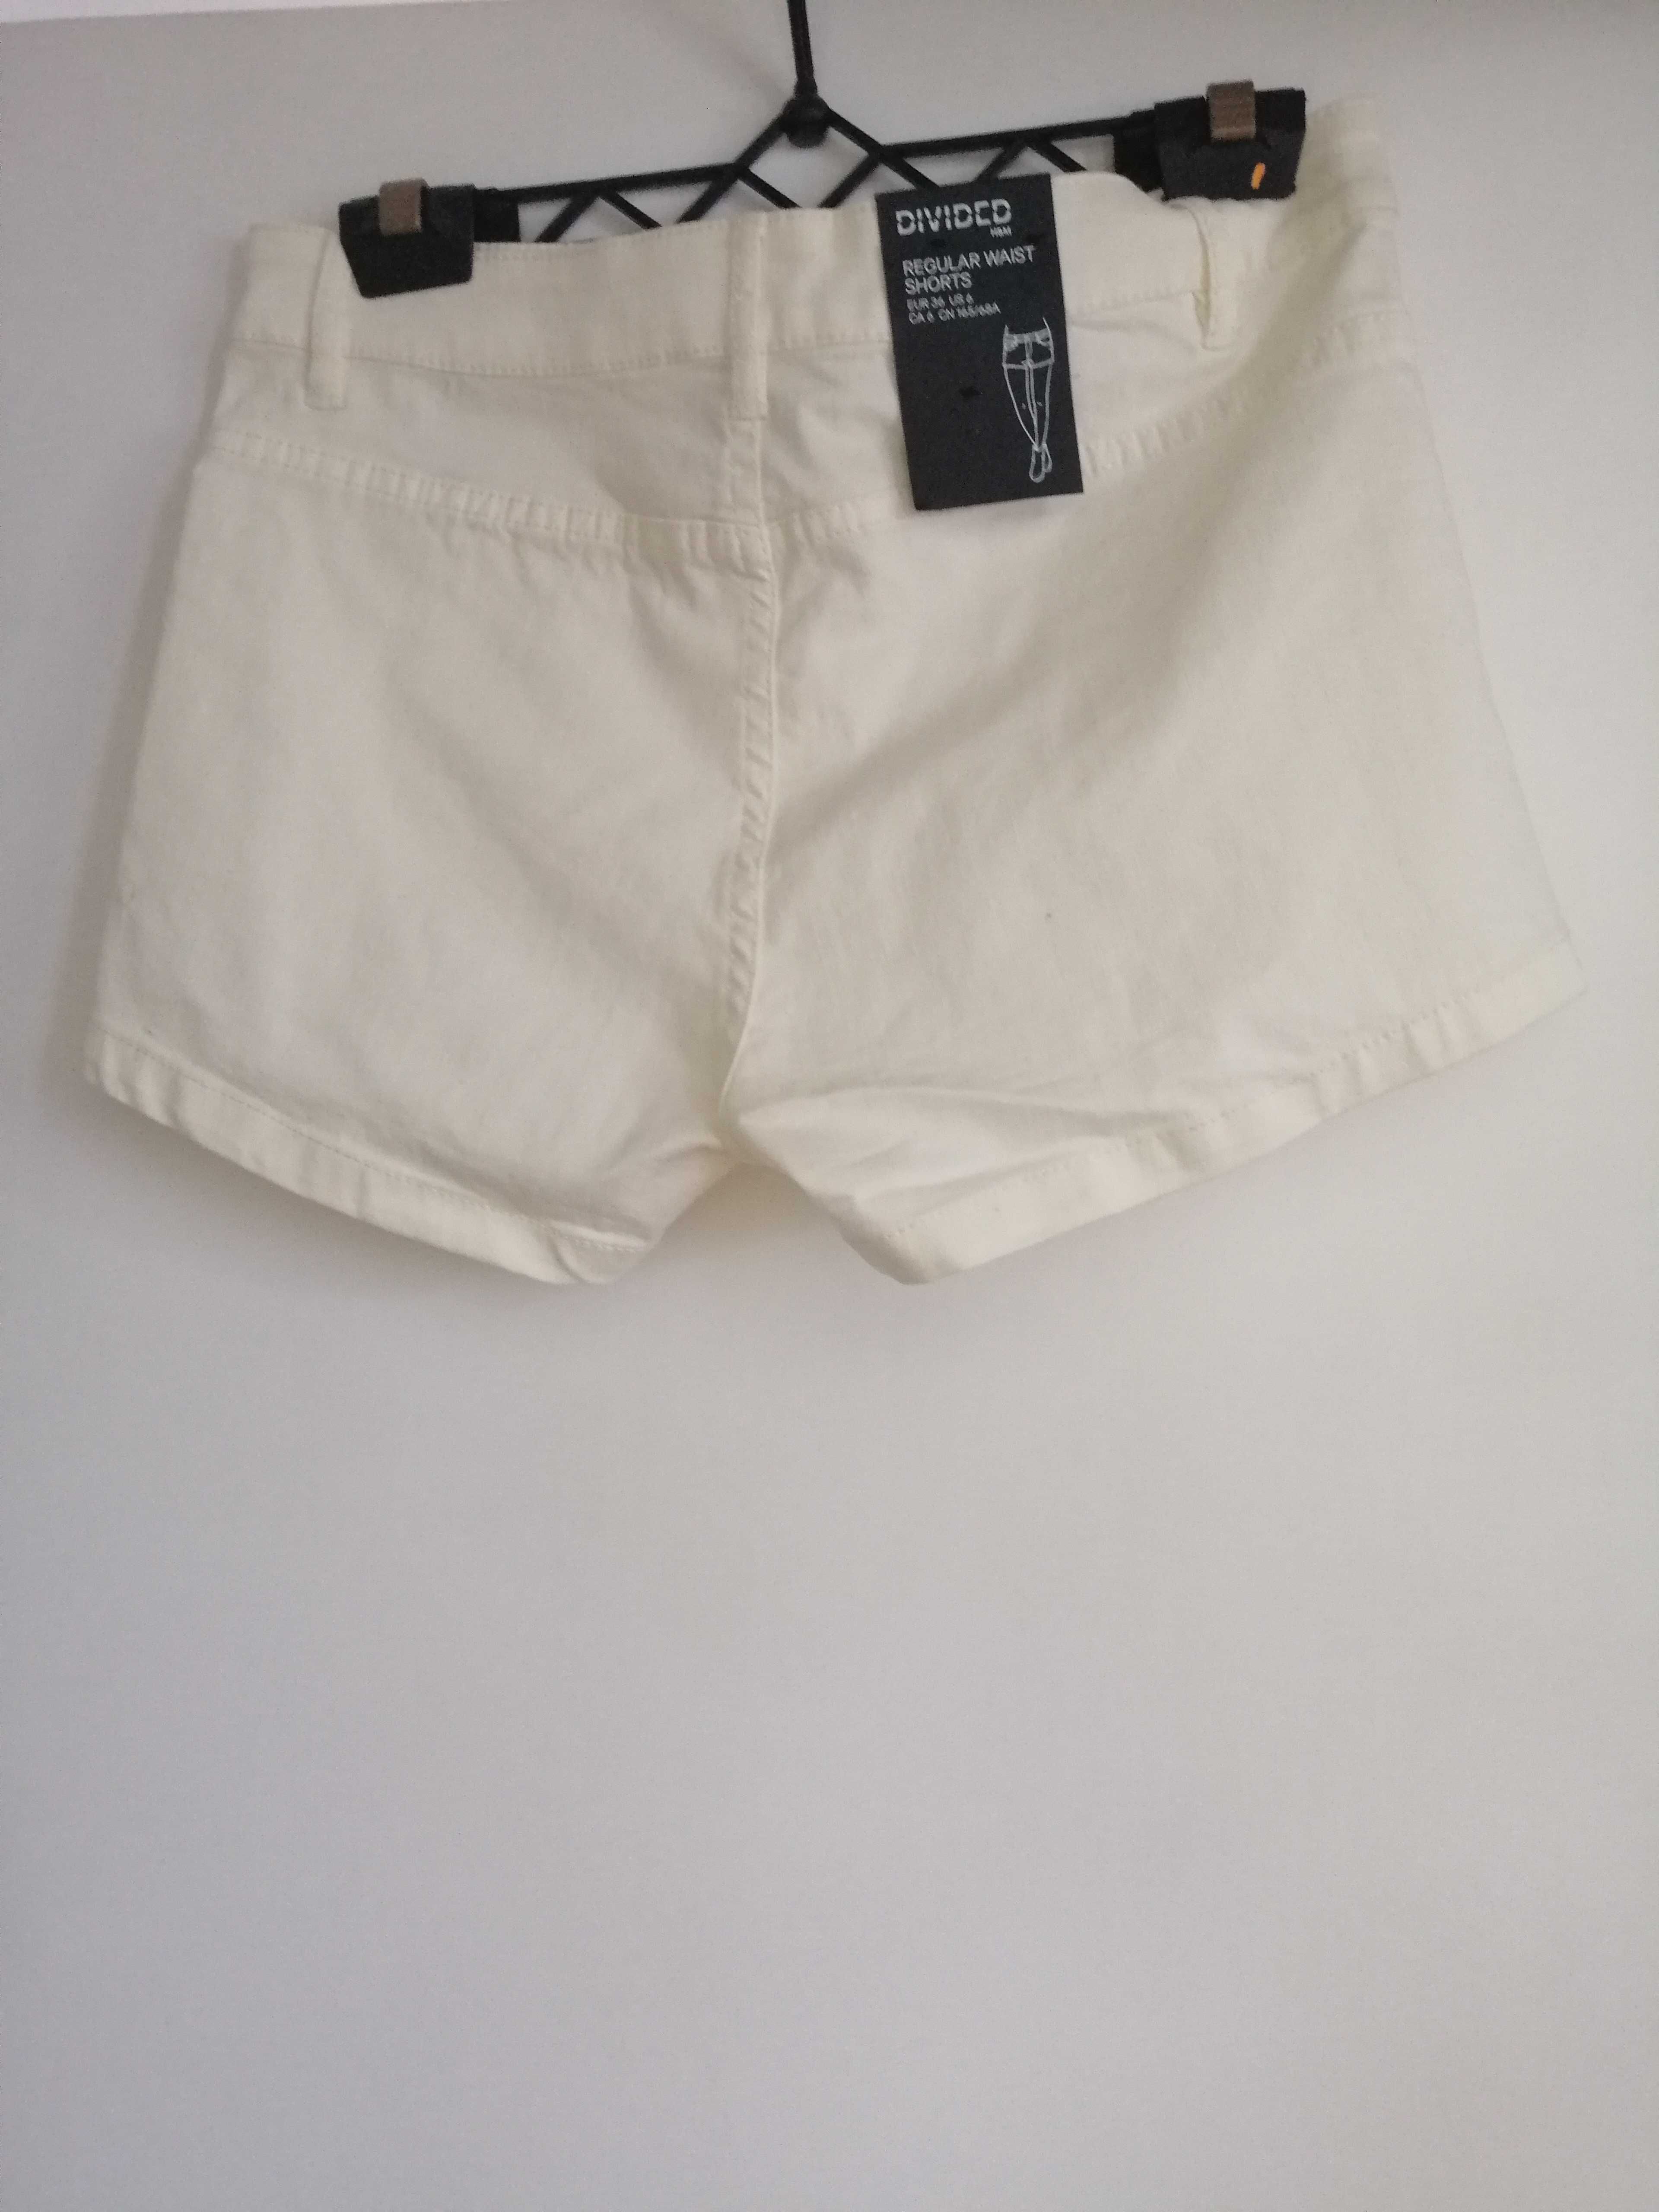 Białe szorty jeansowe H&M krótkie spodenki 36 s kieszonki nowe